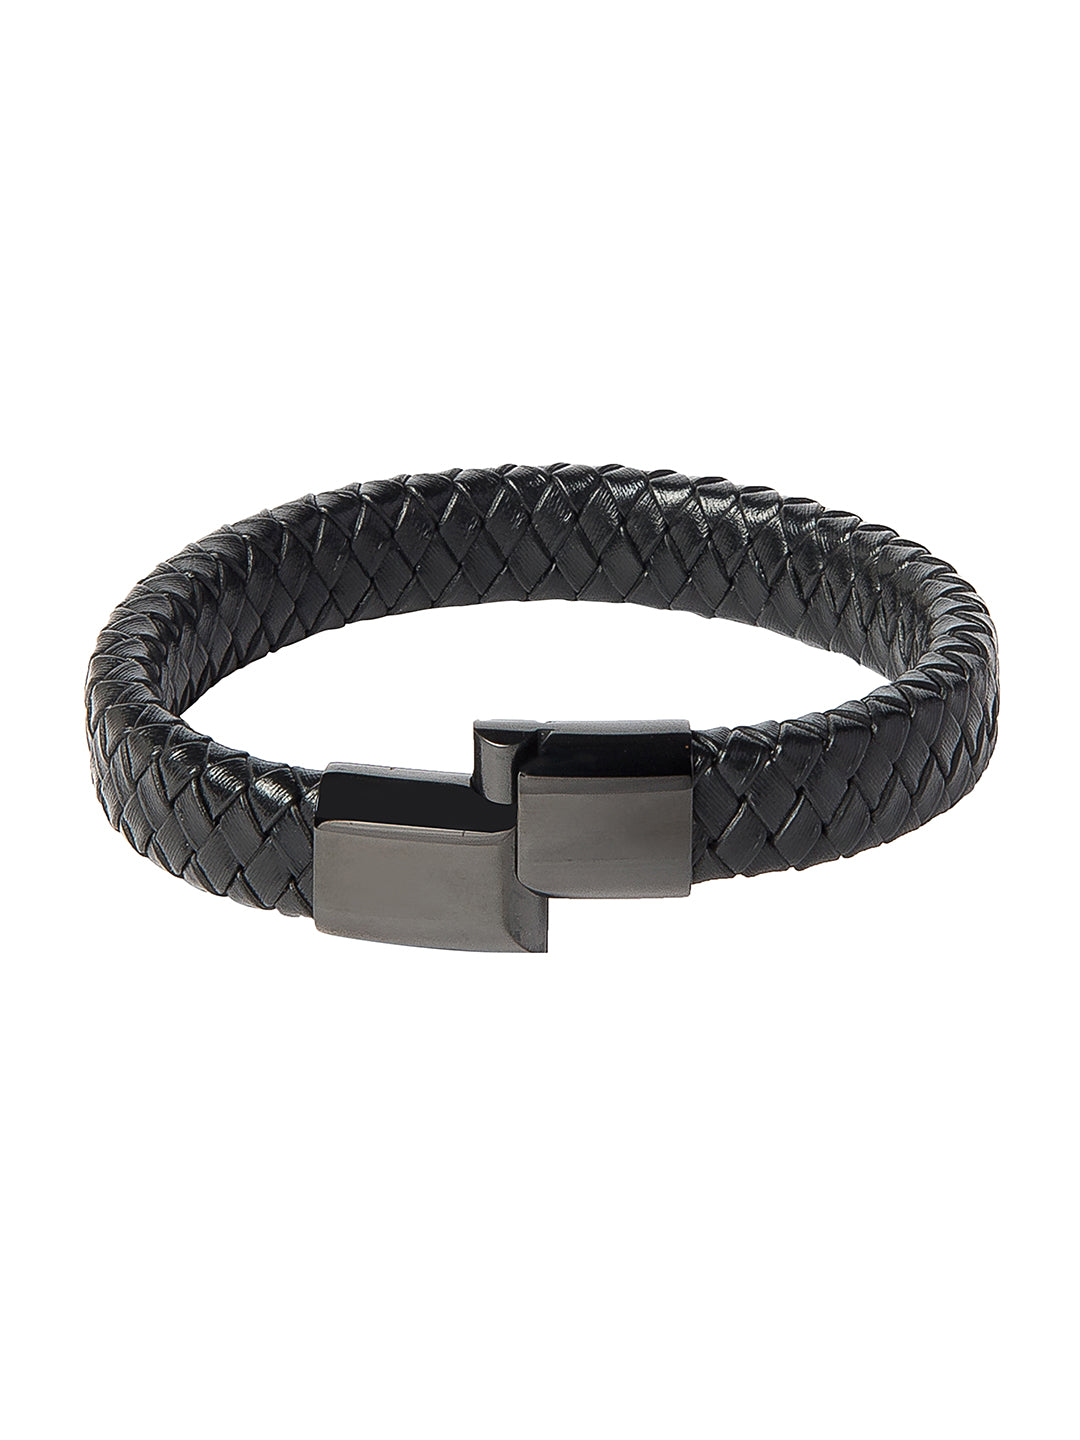 Braided Designer Stainless Steel and Leather Bracelet for Men, Boys Black (SJ_3352_BK) | Shining Jewel